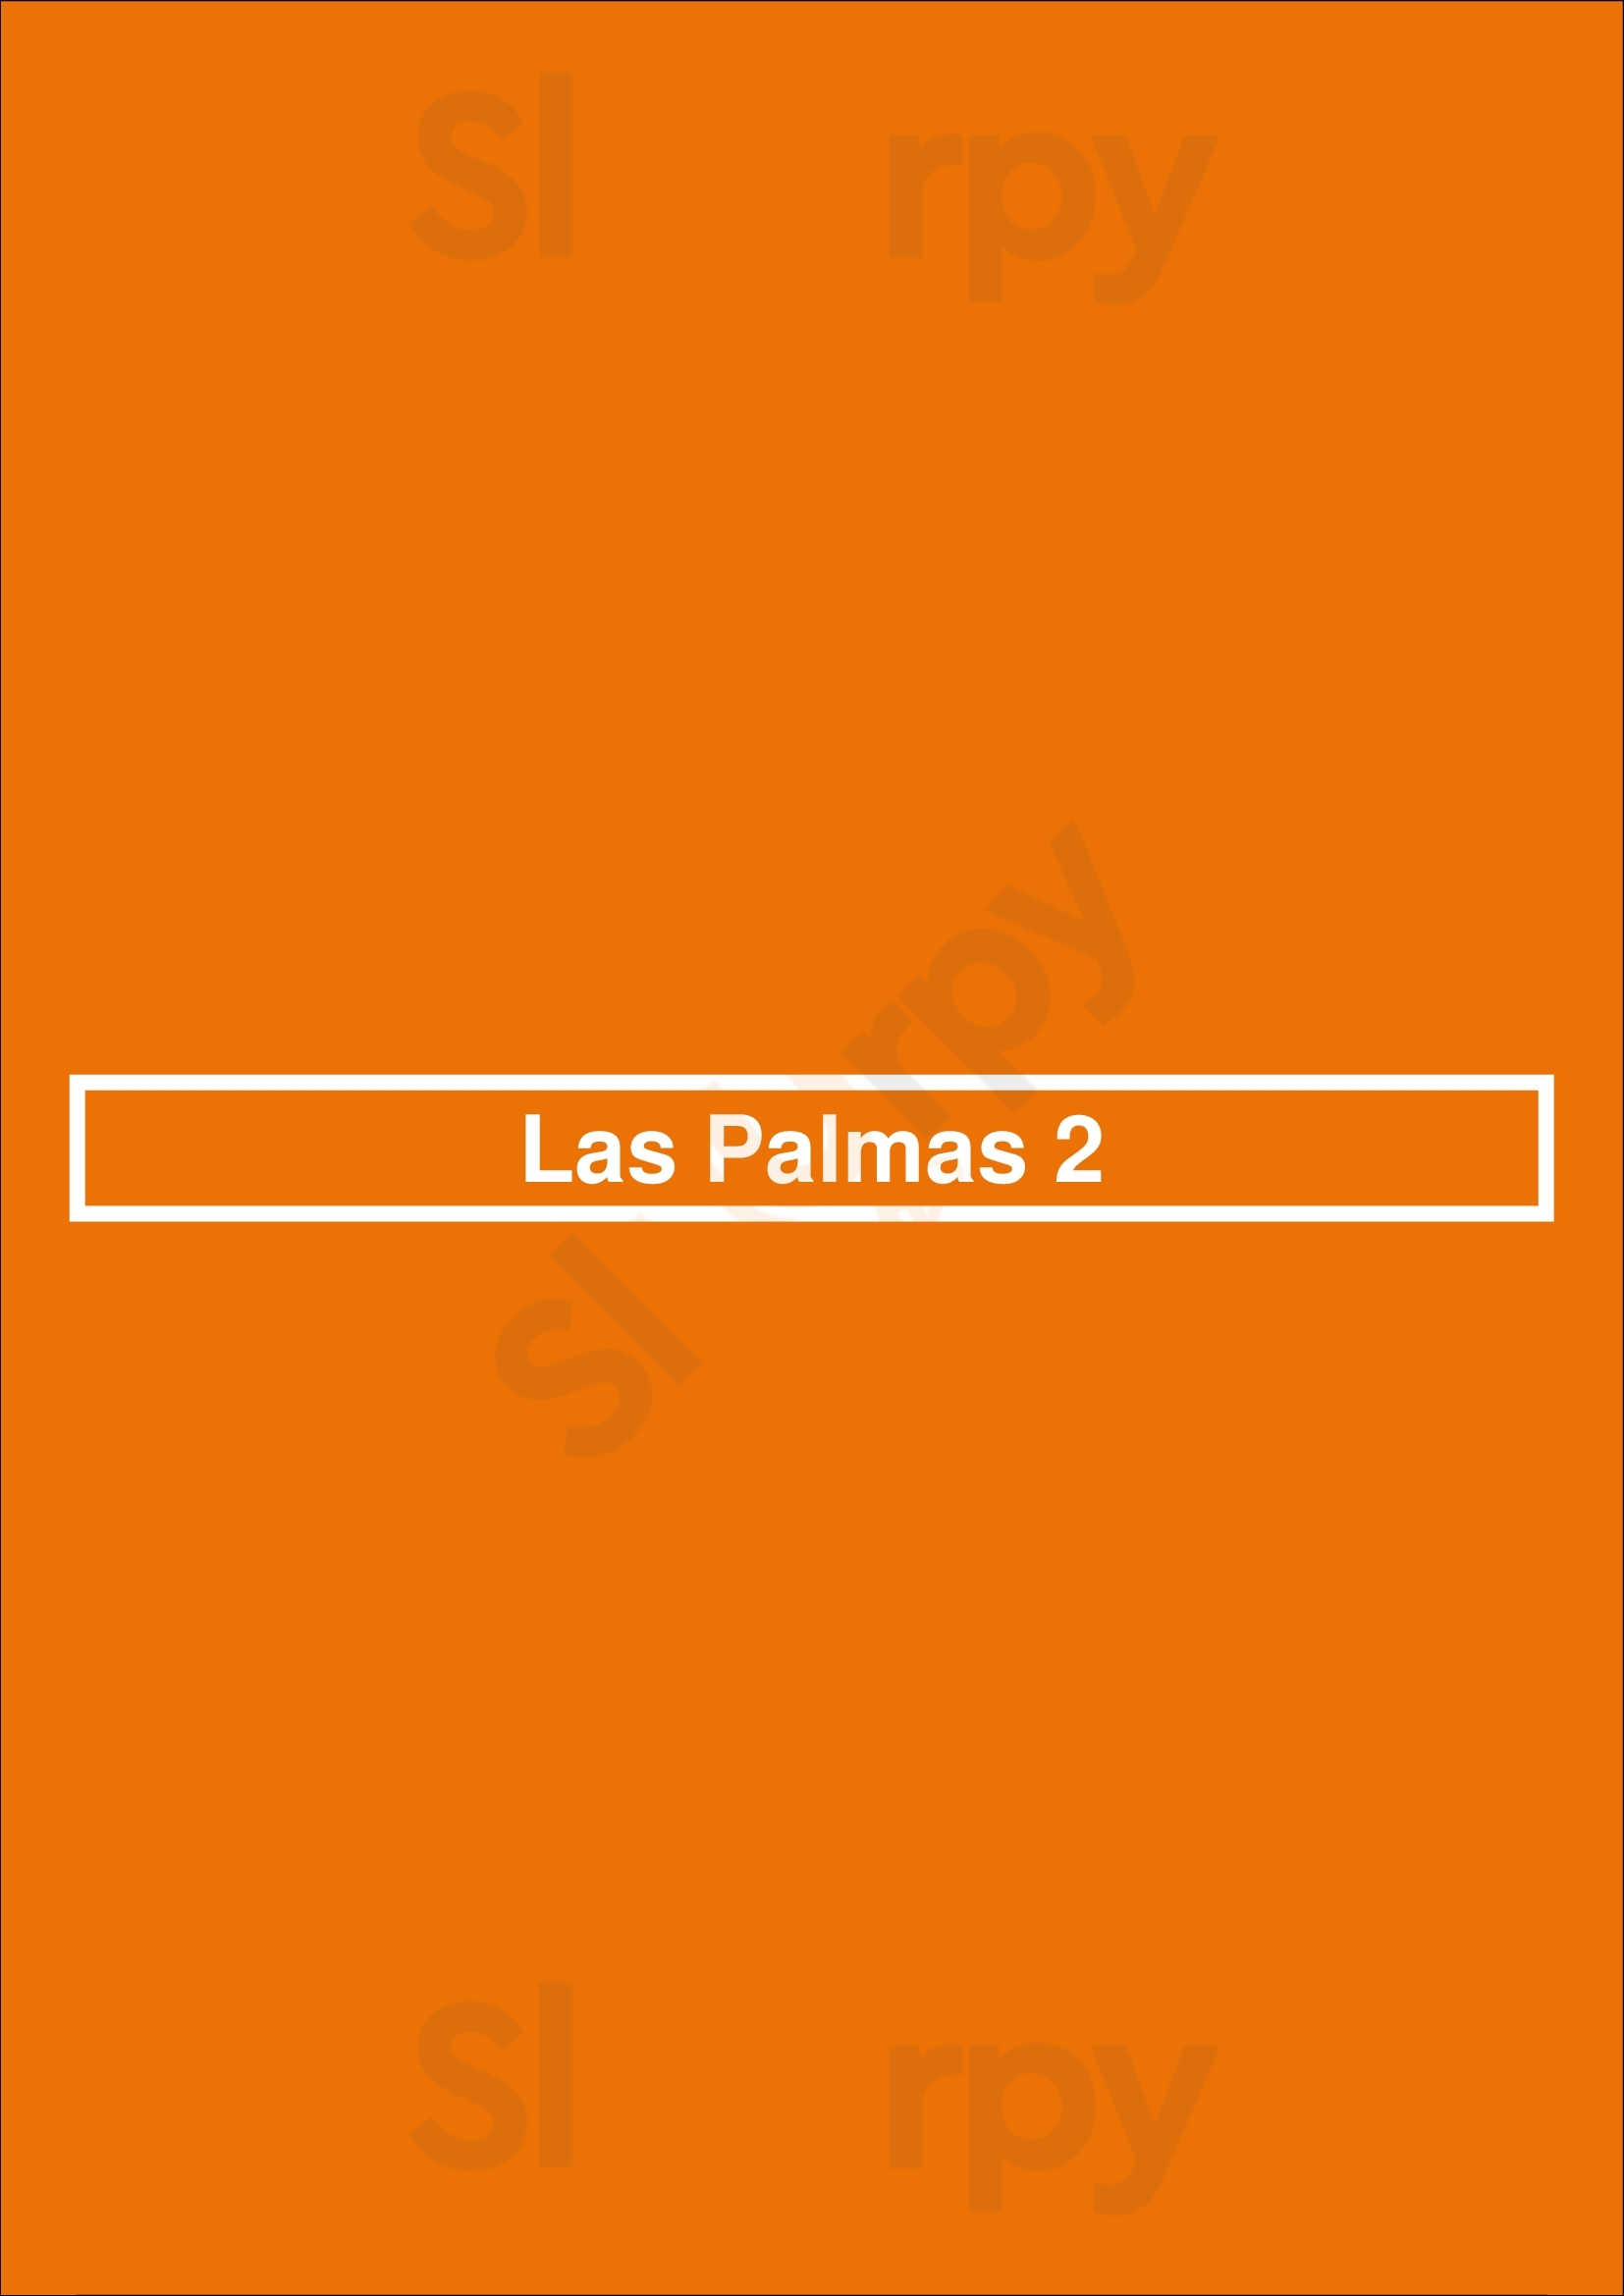 Las Palmas 2 Virginia Beach Menu - 1